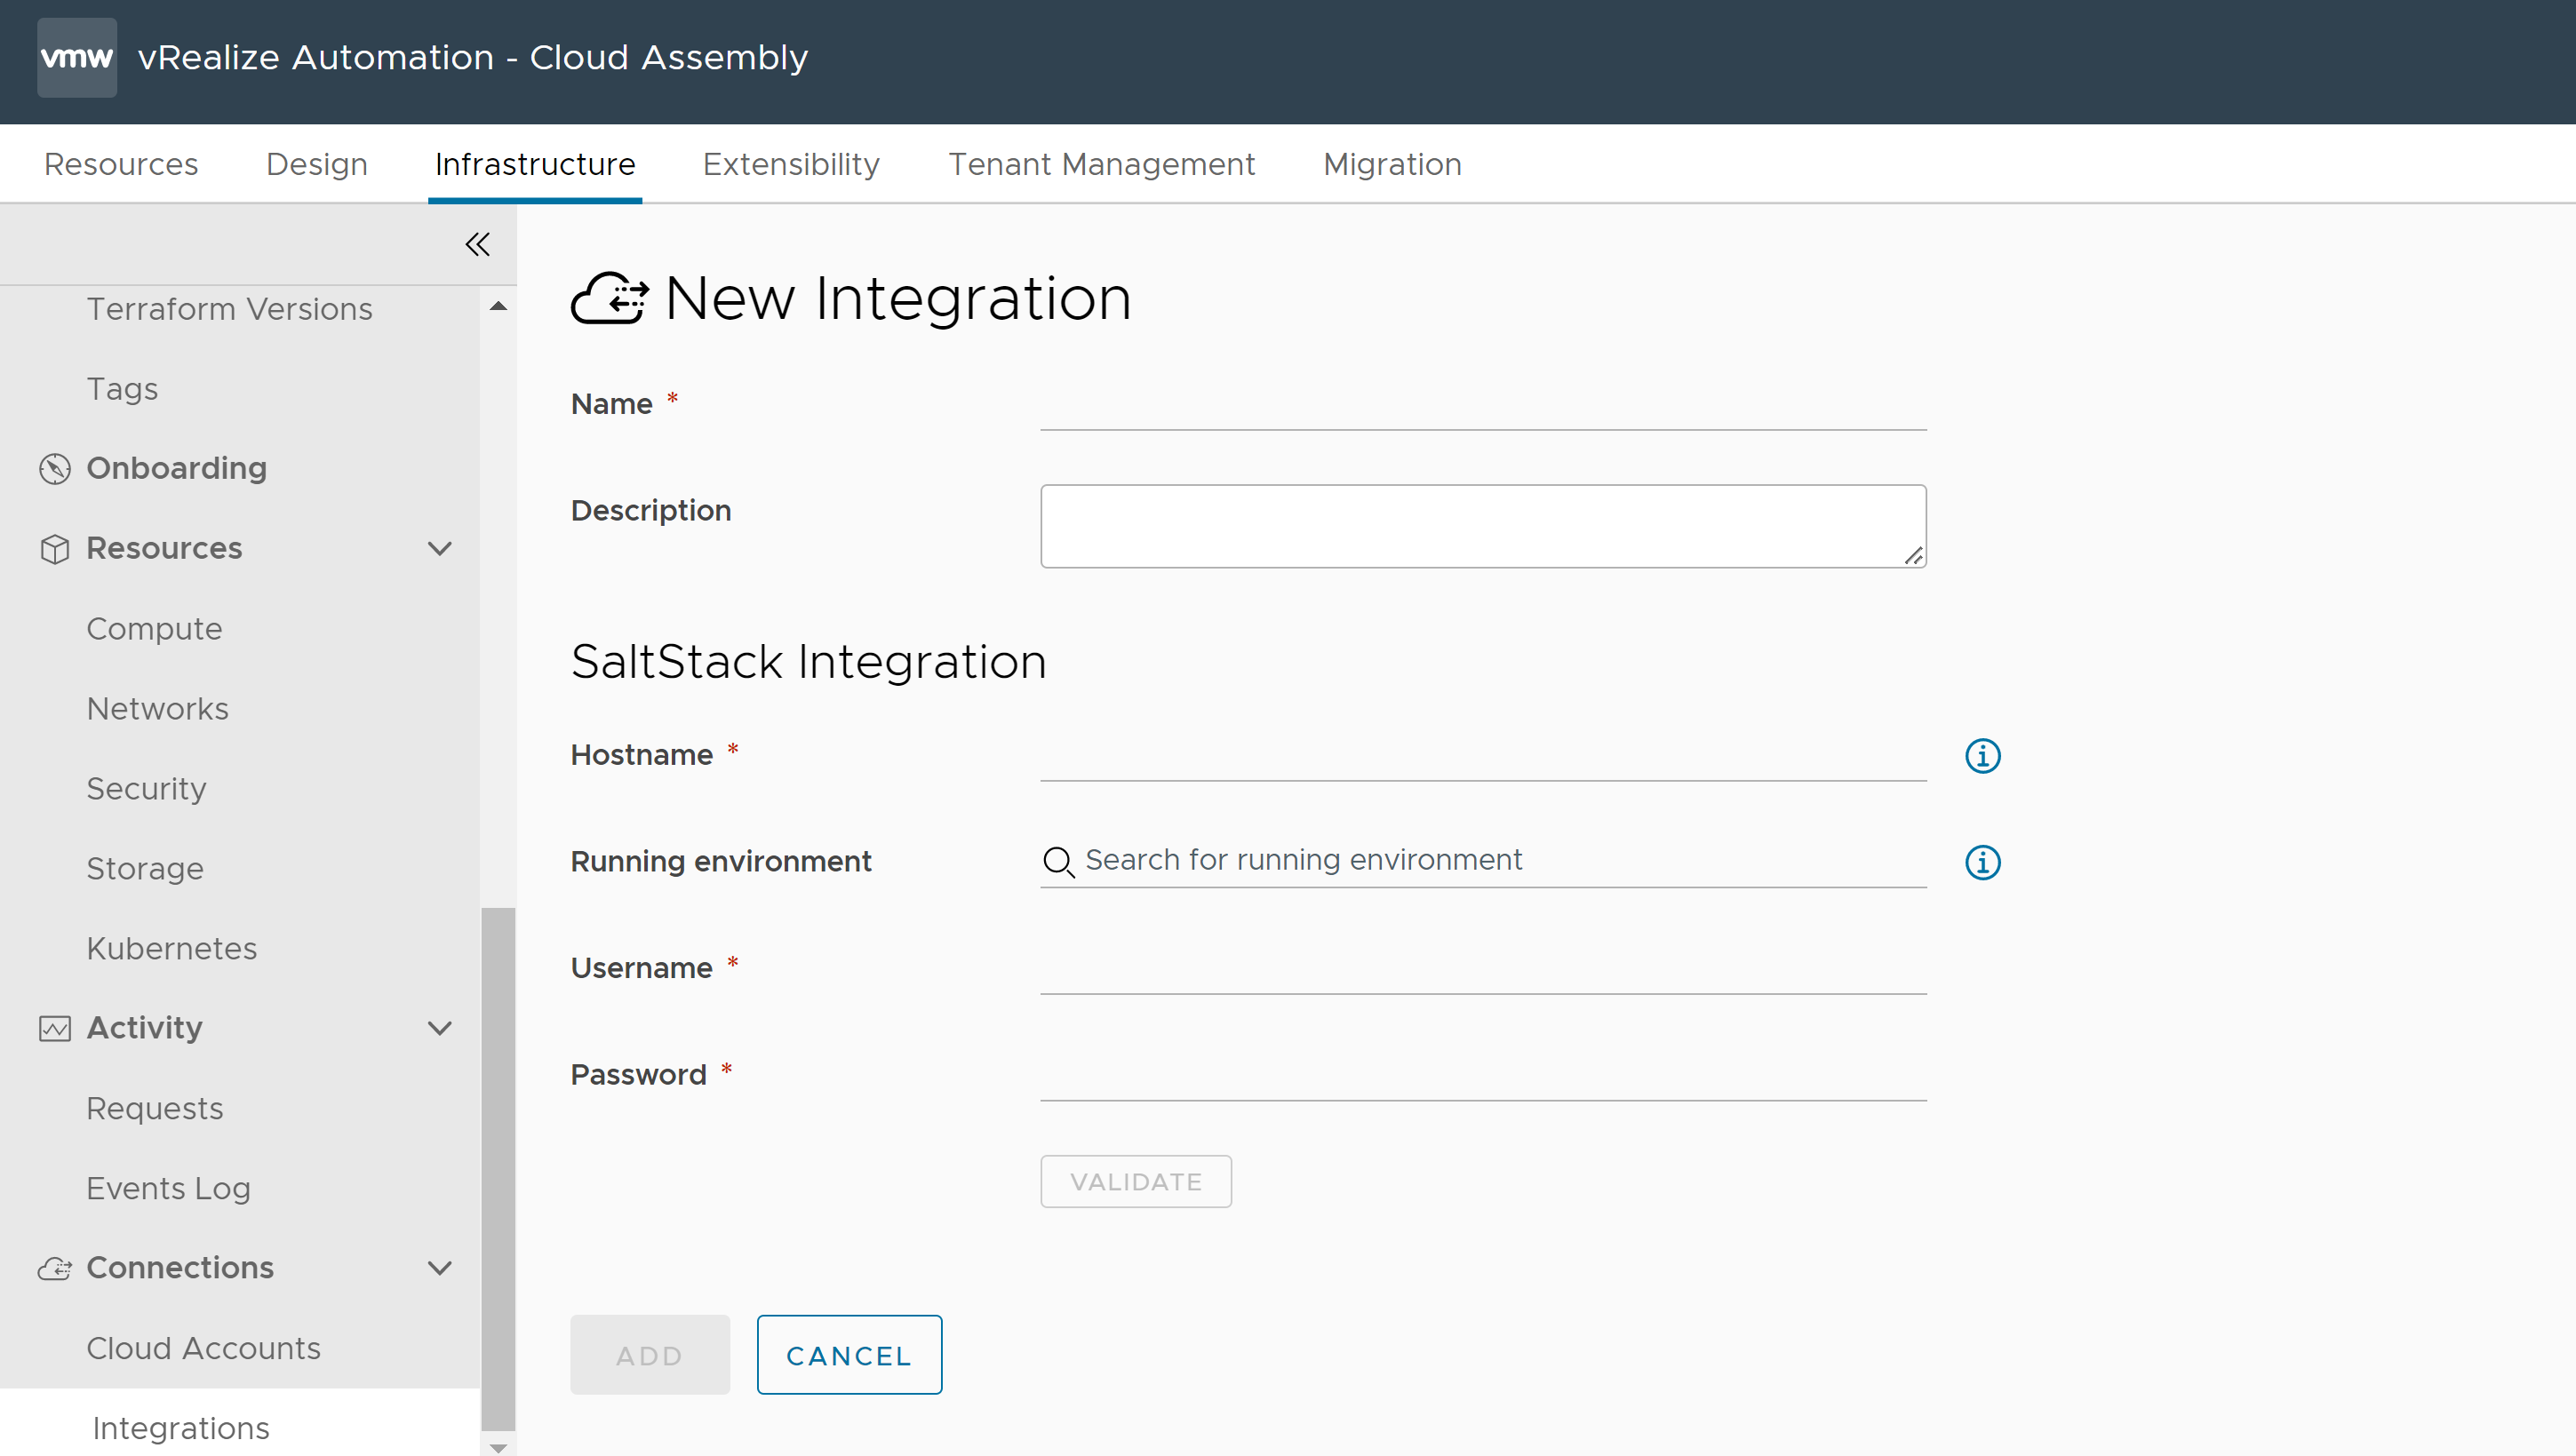 Modulo per creare una nuova integrazione in Cloud Assembly